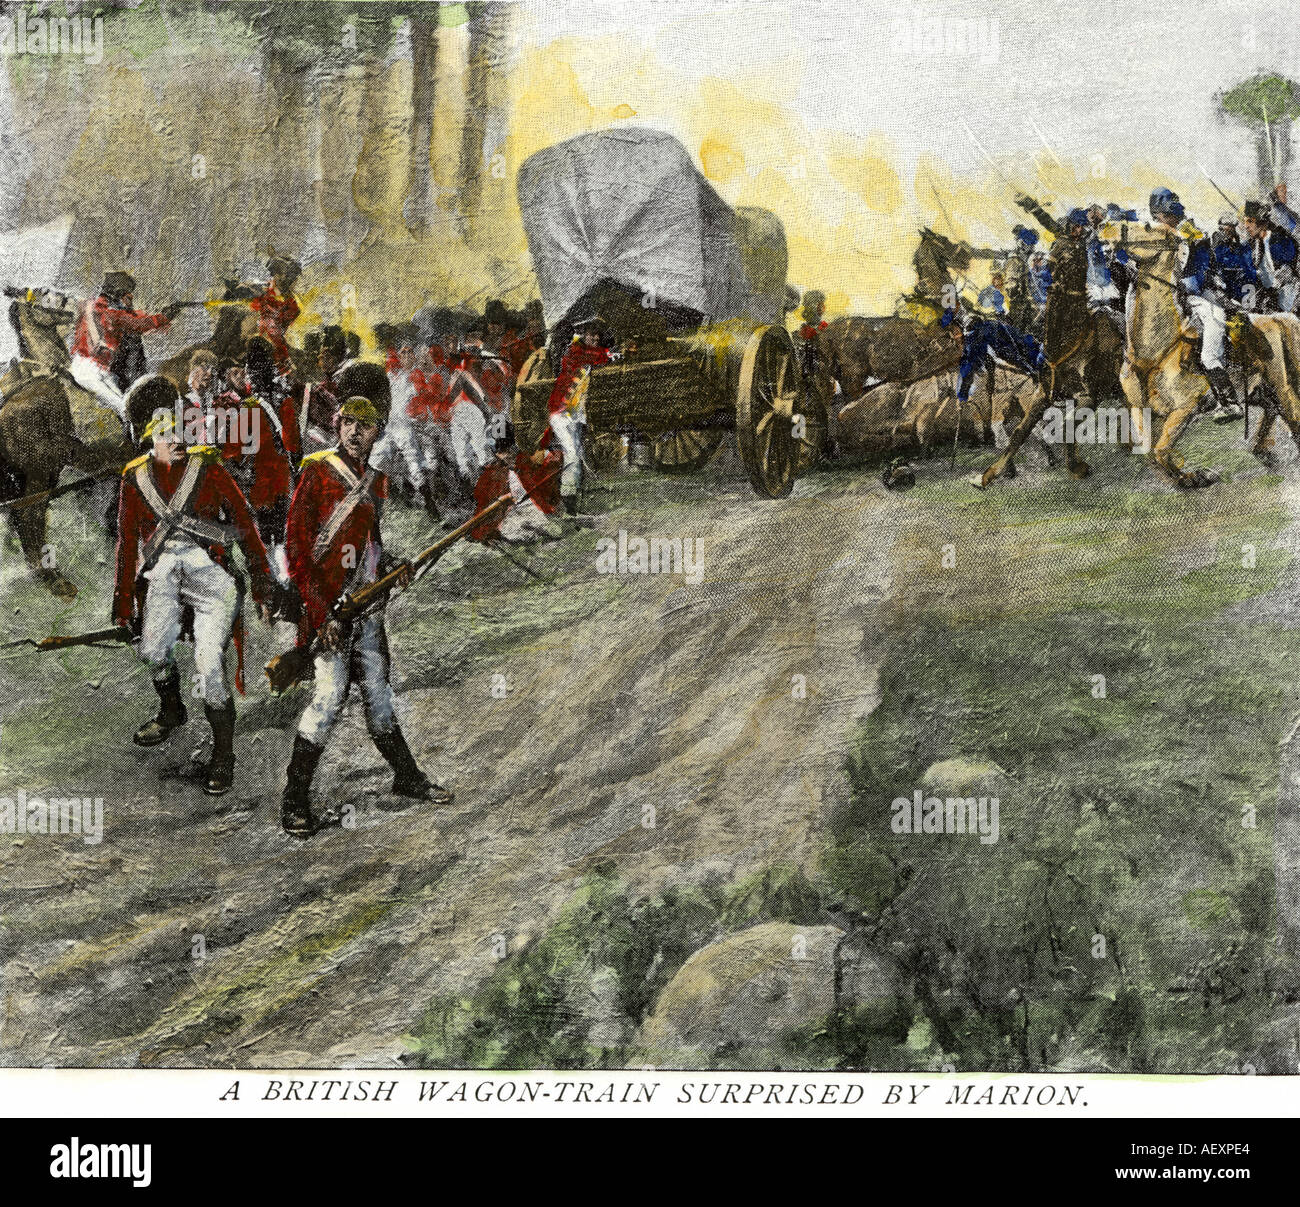 Britische Militär Waggon Zug in einen Hinterhalt durch Francis Marion in Südcarolina während des revolutionären Krieges. Handcolorierte halftone einer Abbildung Stockfoto